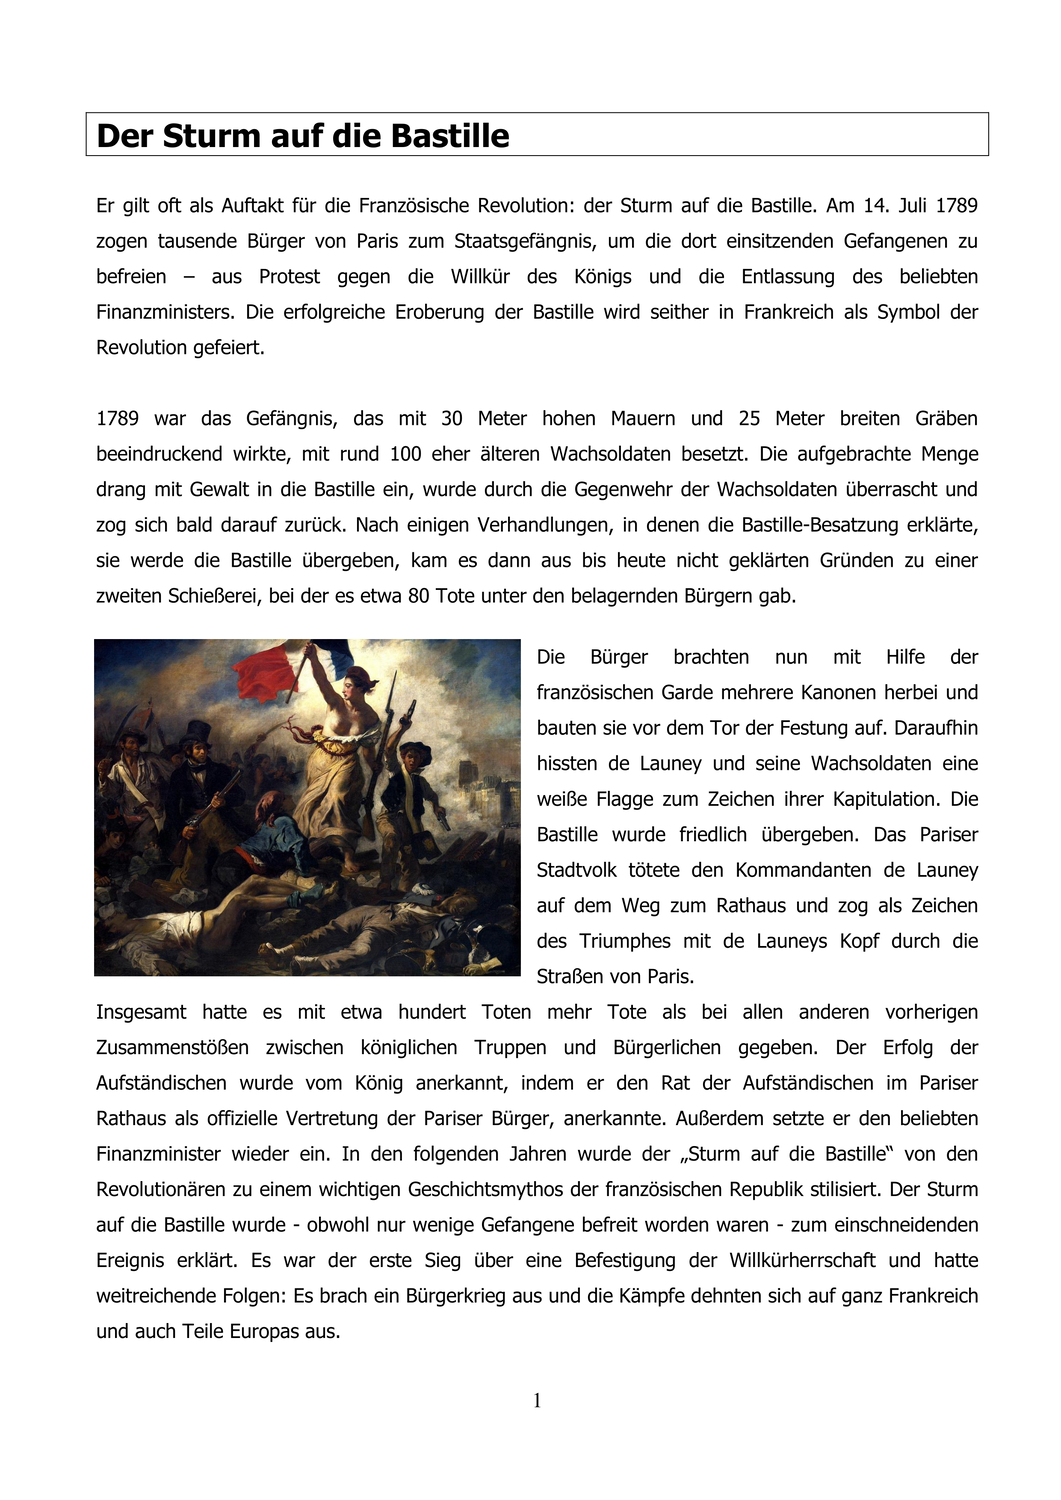 Arbeitsblatt Zum Thema Sturm Auf Die Bastille Geschichte Unterrichten Geschichte Schule Geschichtsunterricht